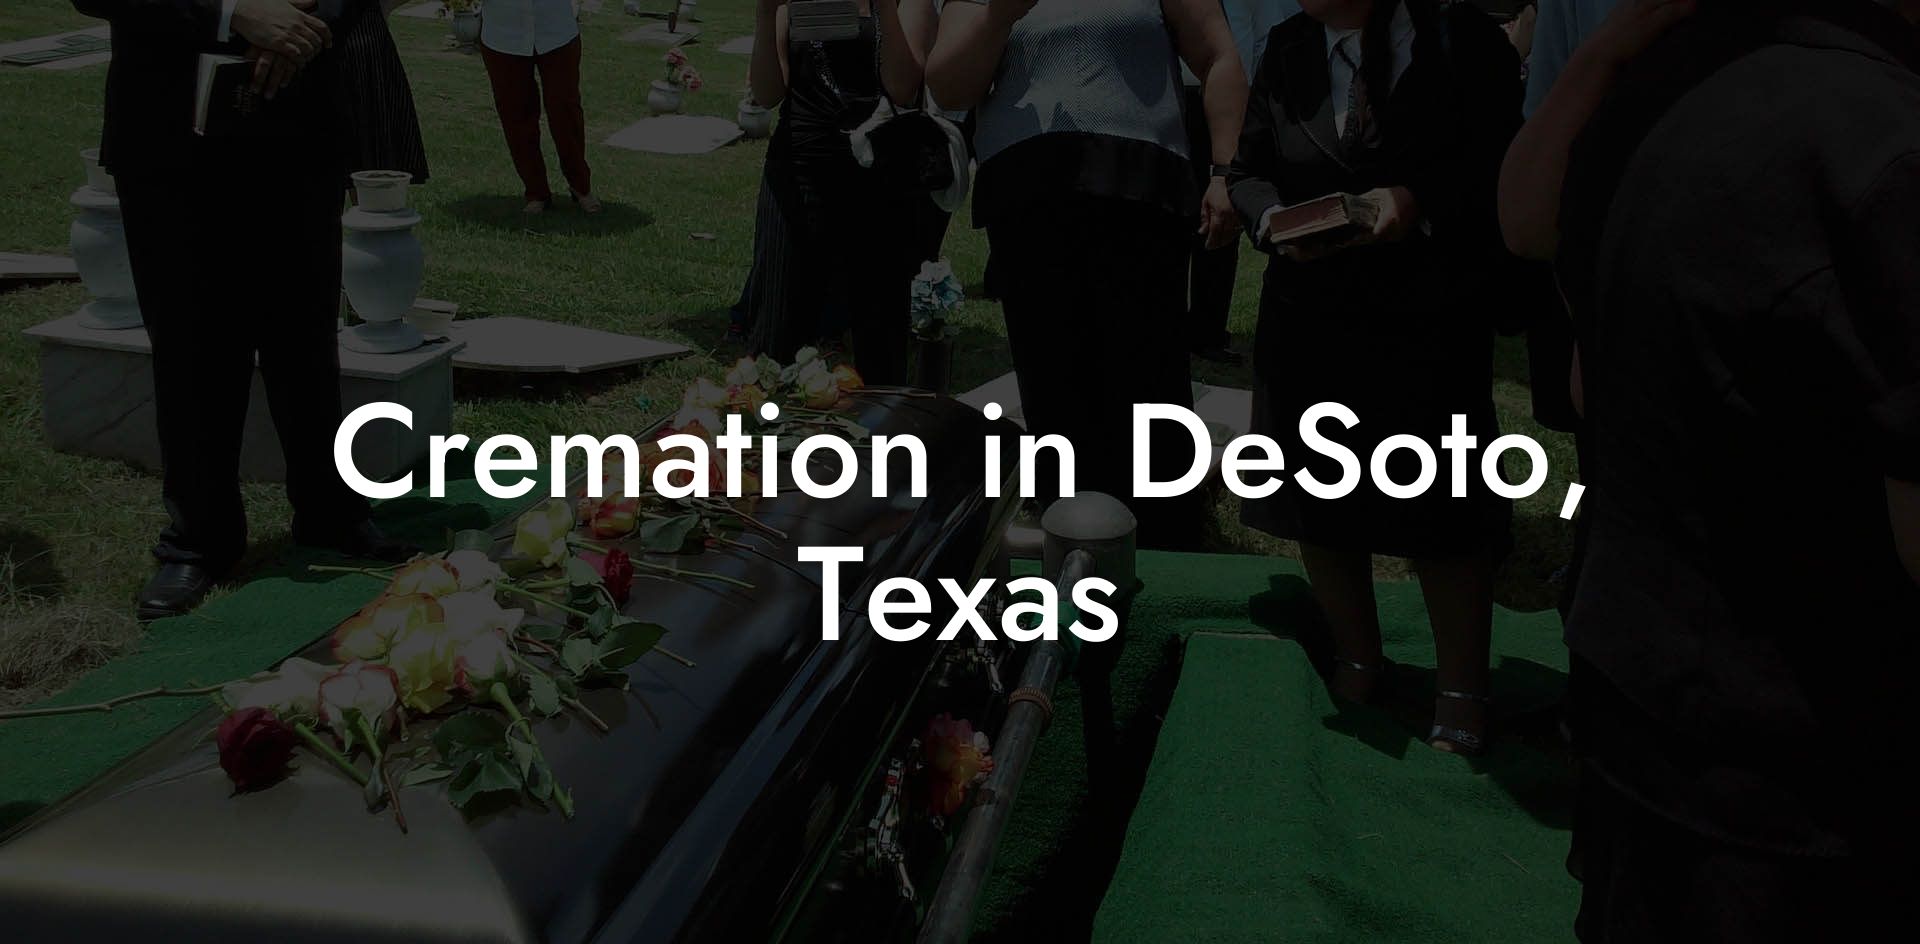 Cremation in DeSoto, Texas